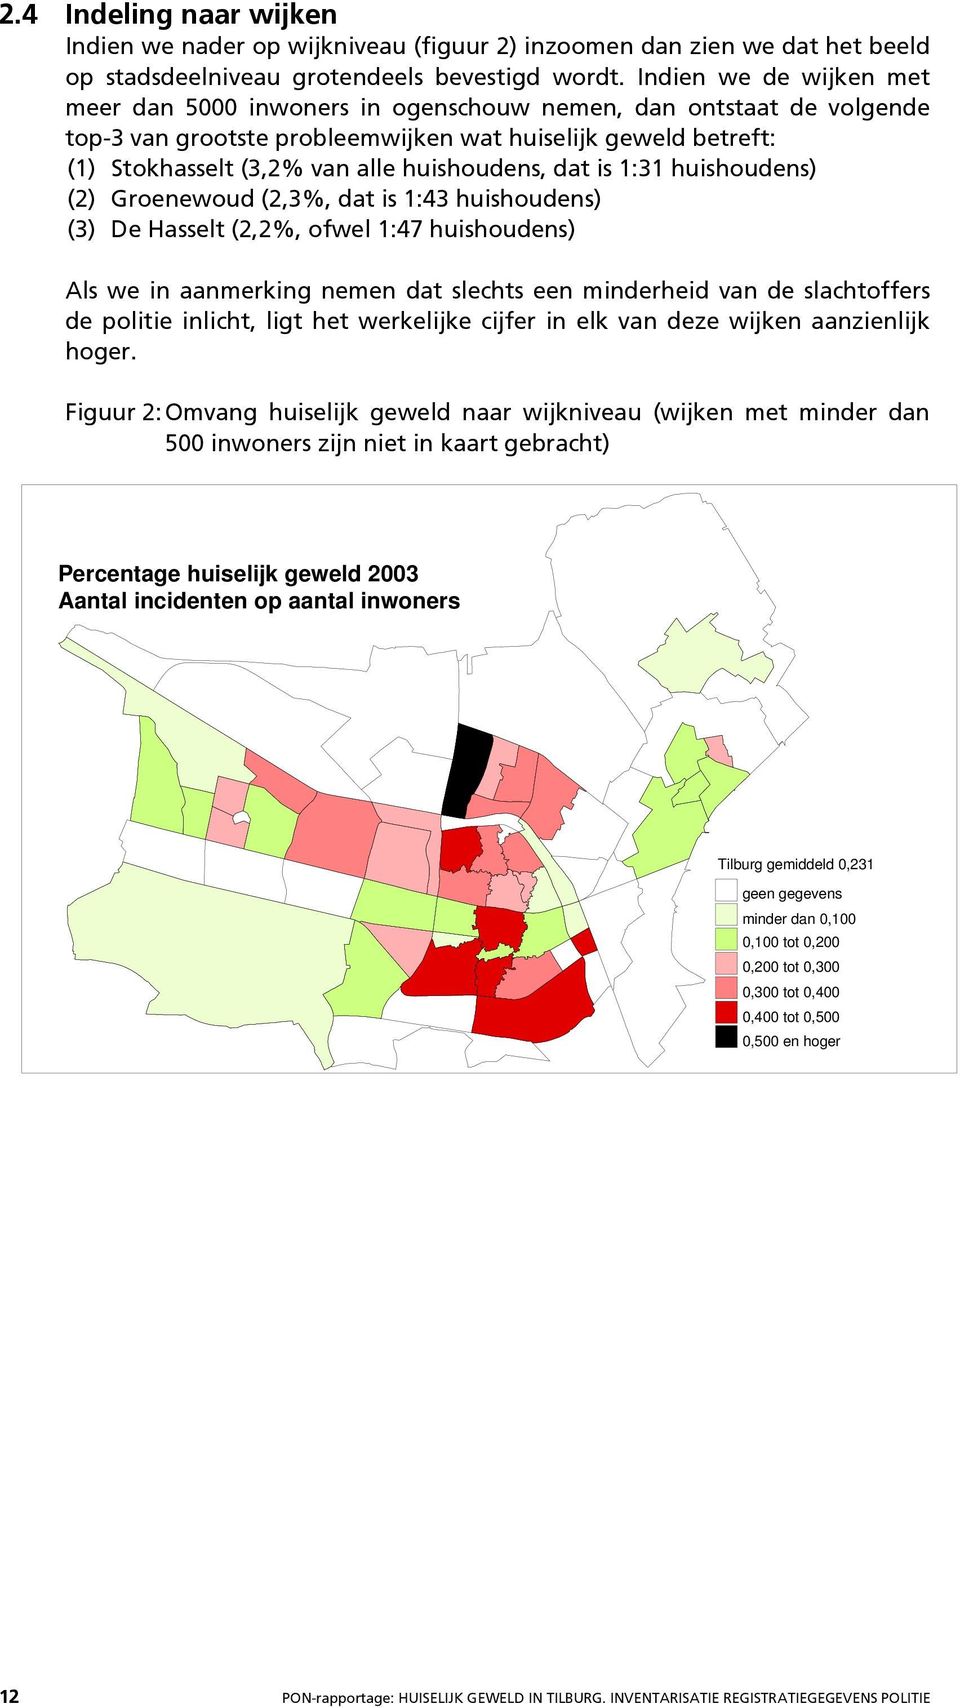 huishoudens, dat is 1:31 huishoudens) (2) Groenewoud (2,3%, dat is 1:43 huishoudens) (3) De Hasselt (2,2%, ofwel 1:47 huishoudens) Als we in aanmerking nemen dat slechts een minderheid van de